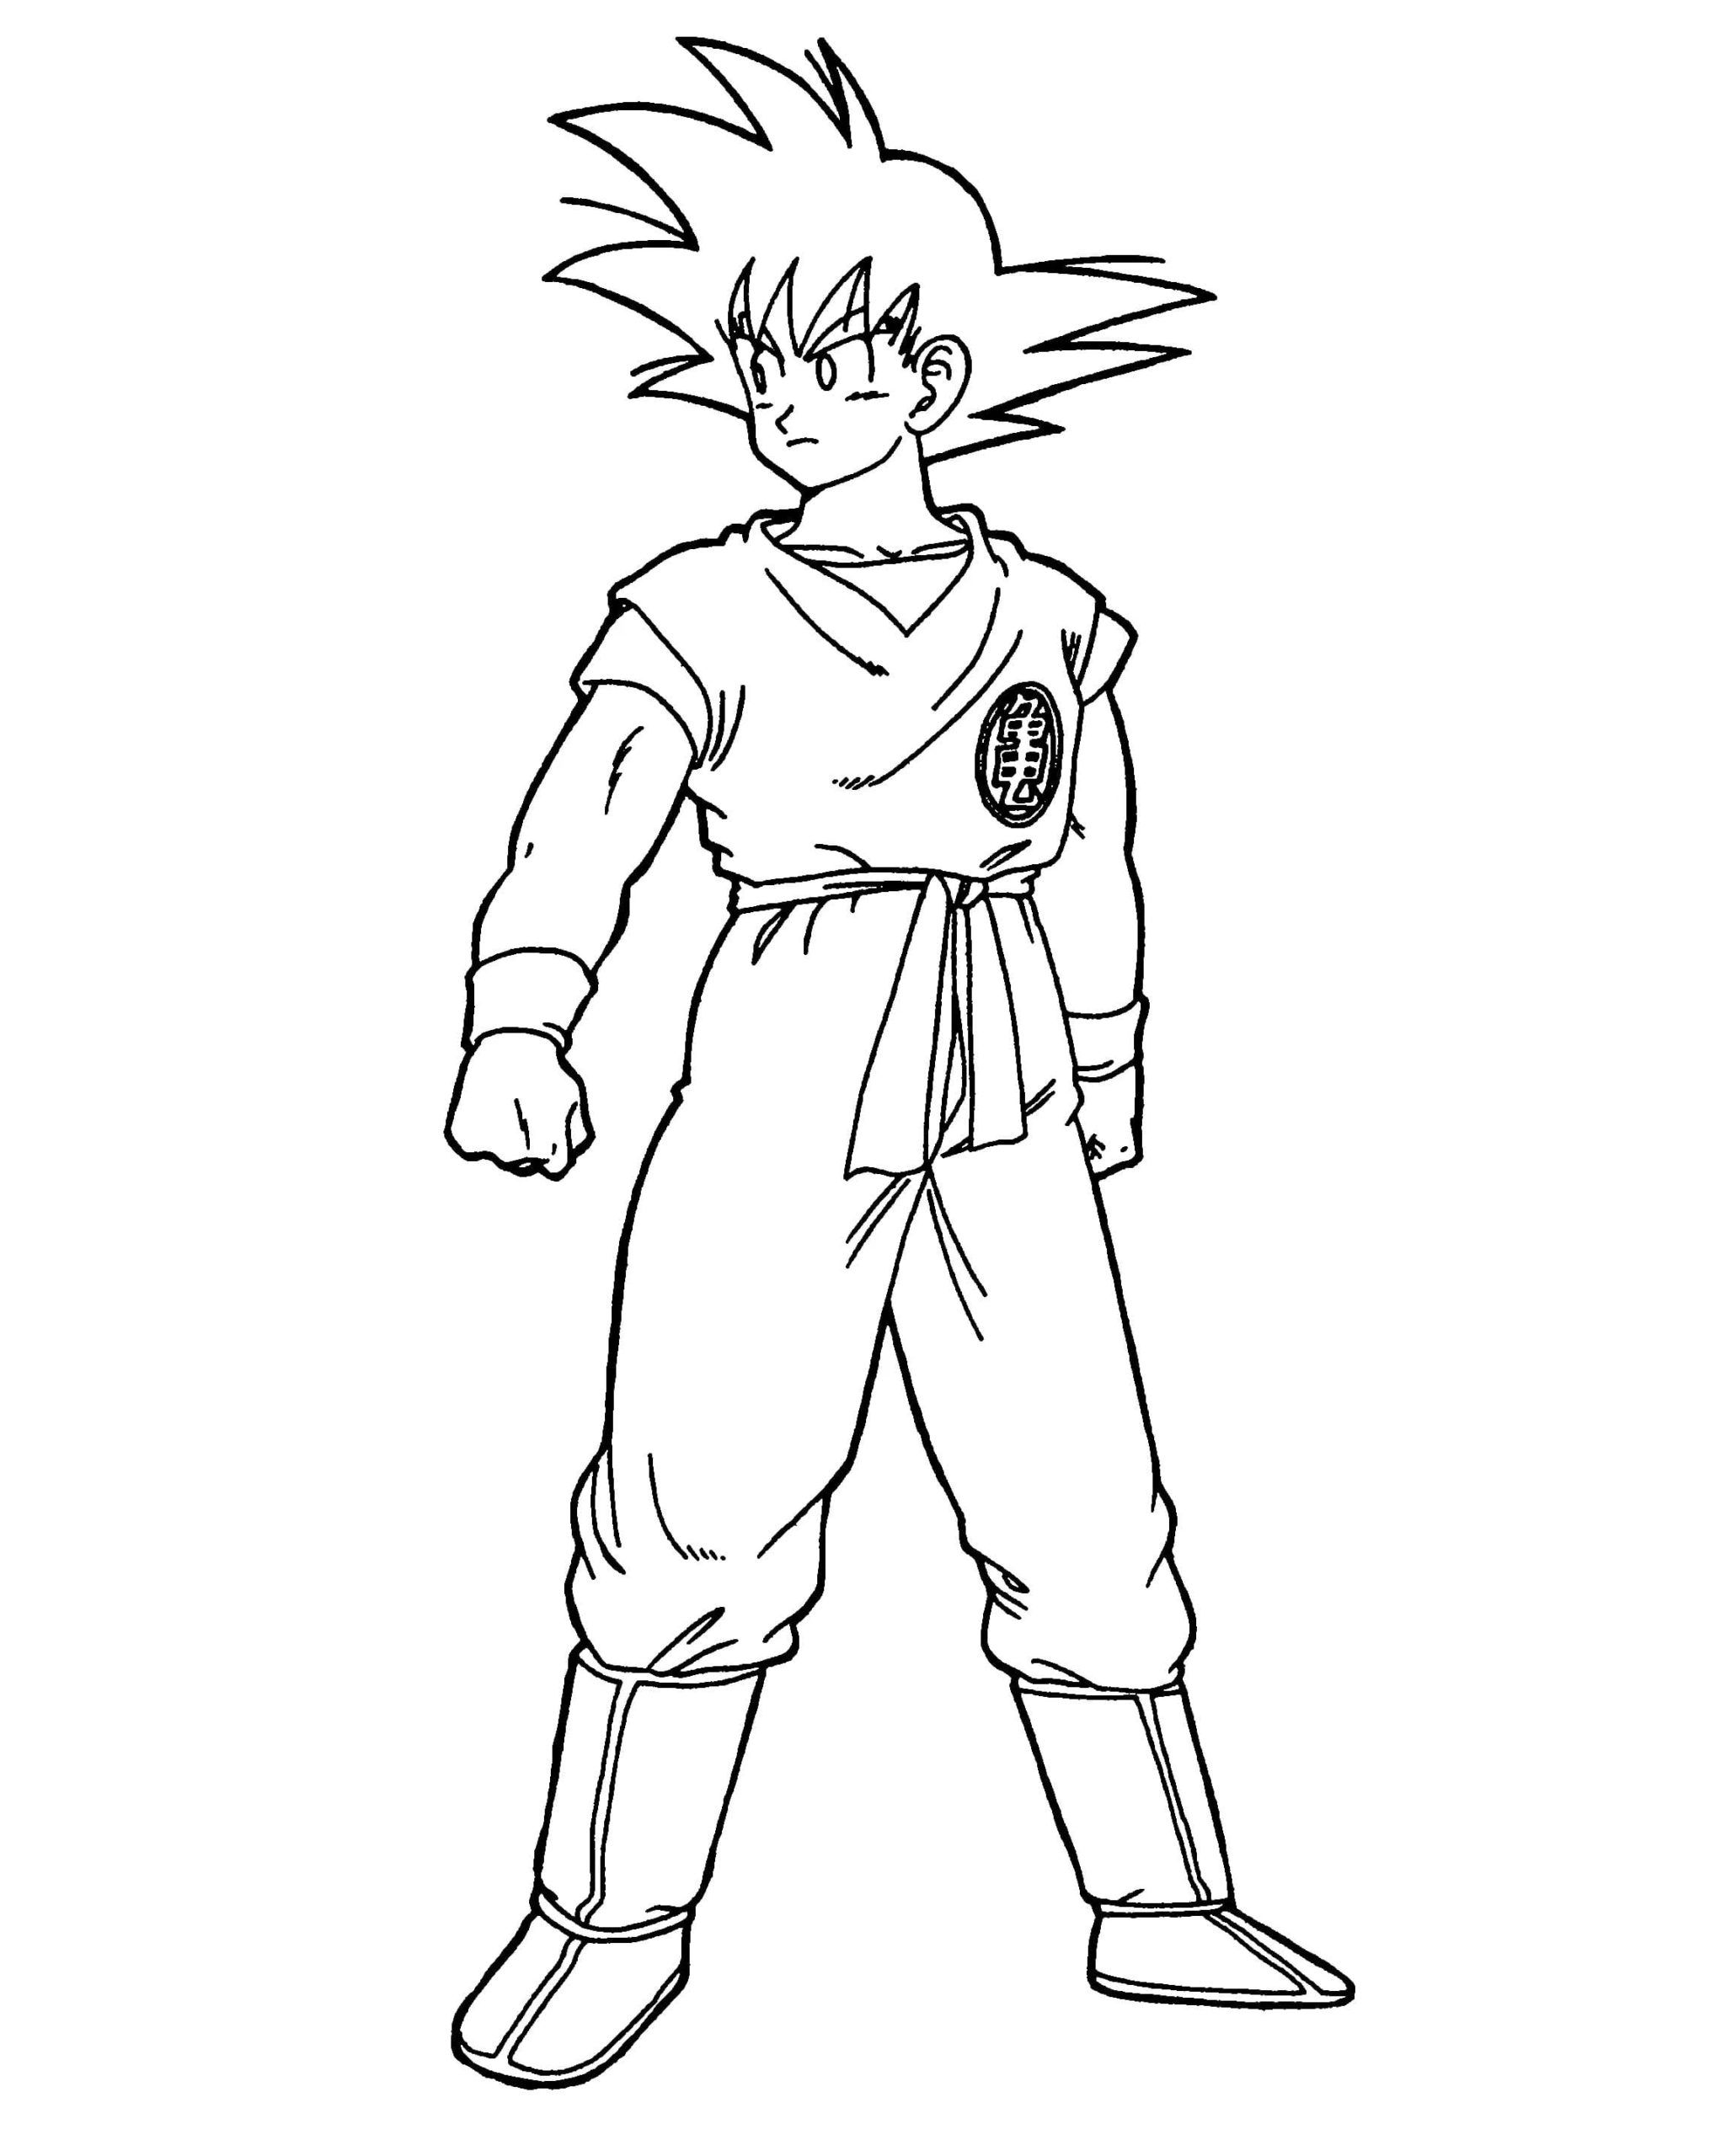 Para Colorear Dragon Ball Goku es el protagonista